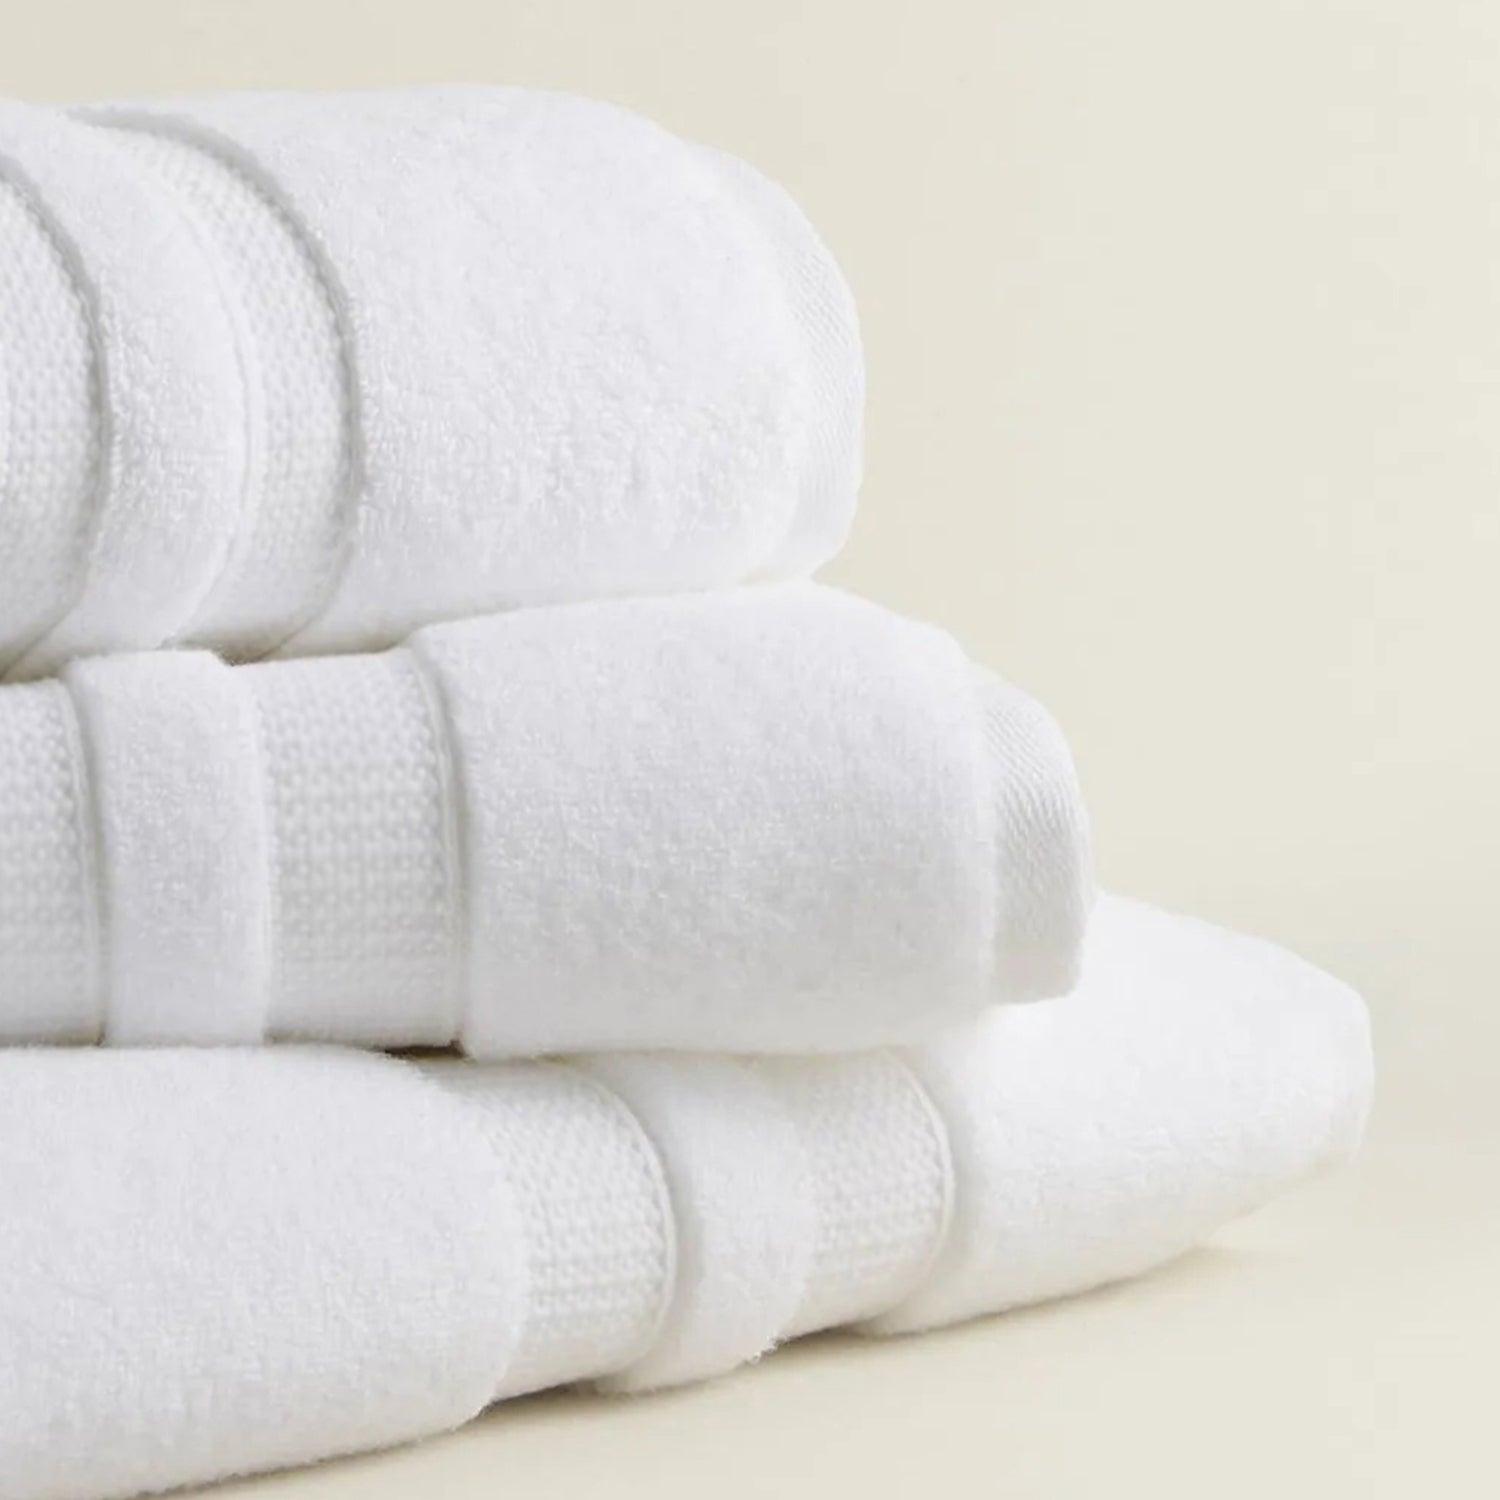 Cotton Bath Towel Pack of 2 - White - beddingbag.com